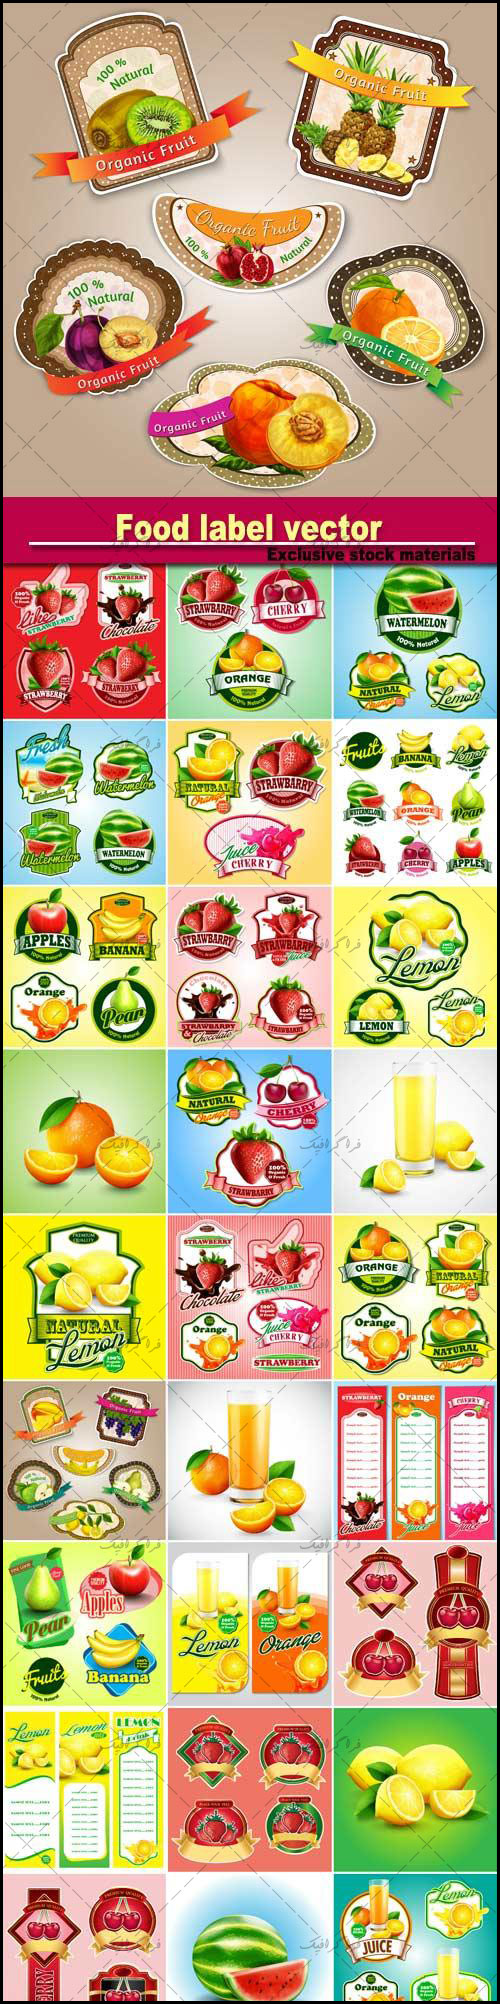 دانلود وکتور برچسب محصولات تبلیغاتی میوه